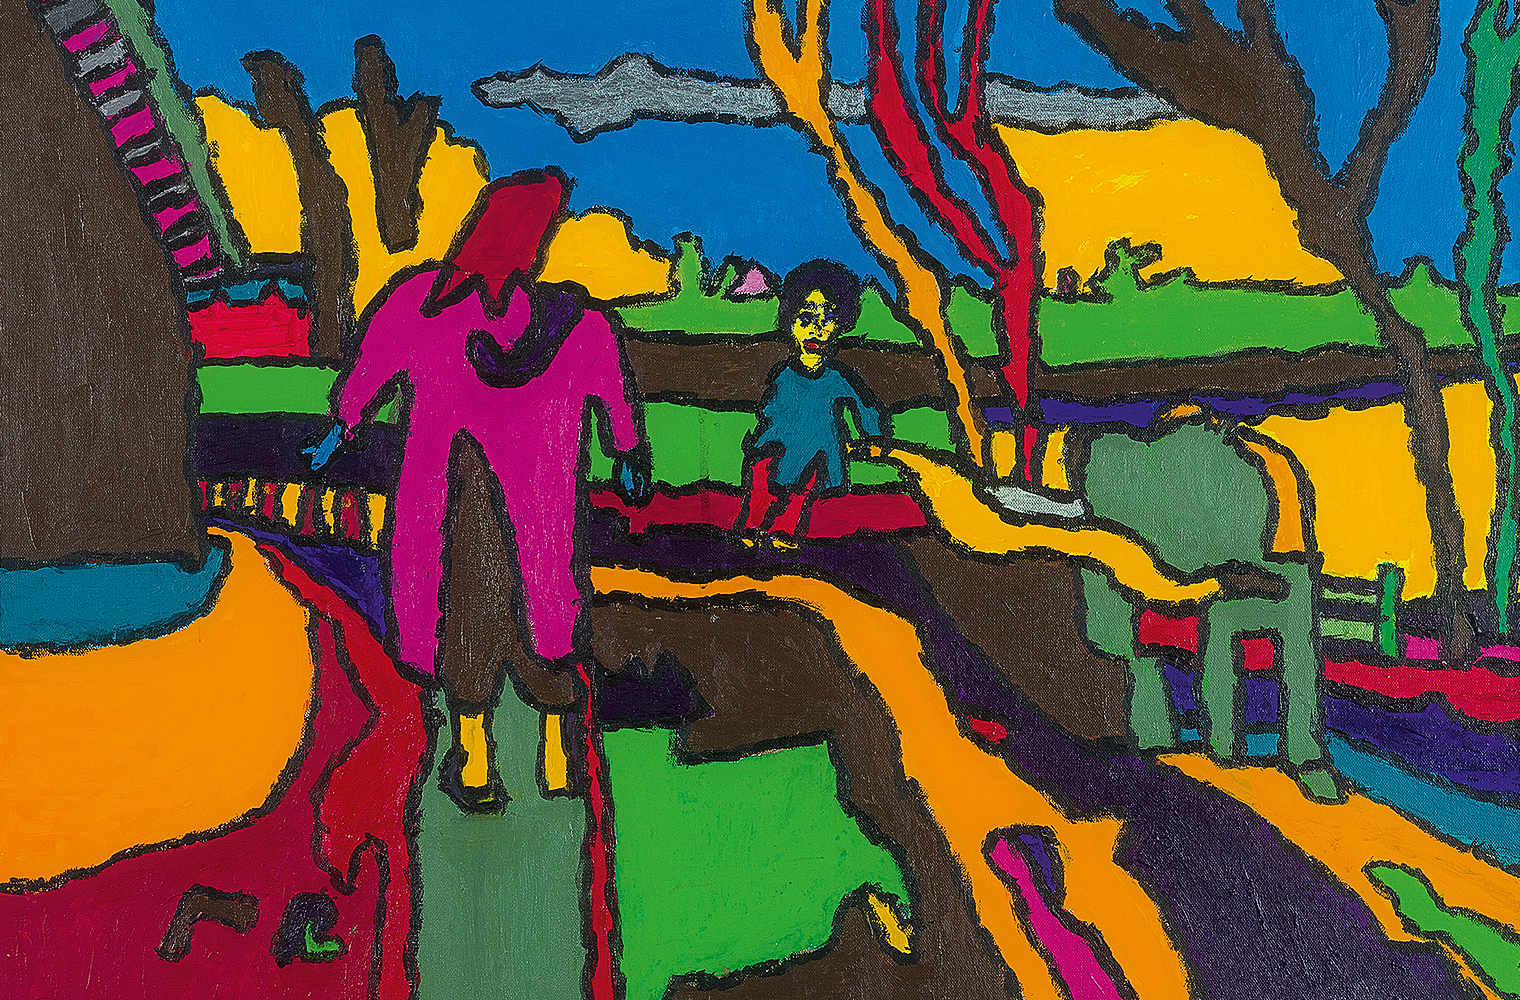 Farbenkräftige Landschaft mit zwei Figuren: Die kleinere Figur blickt den Betrachter an, die zweite ist von hinten zu sehen.